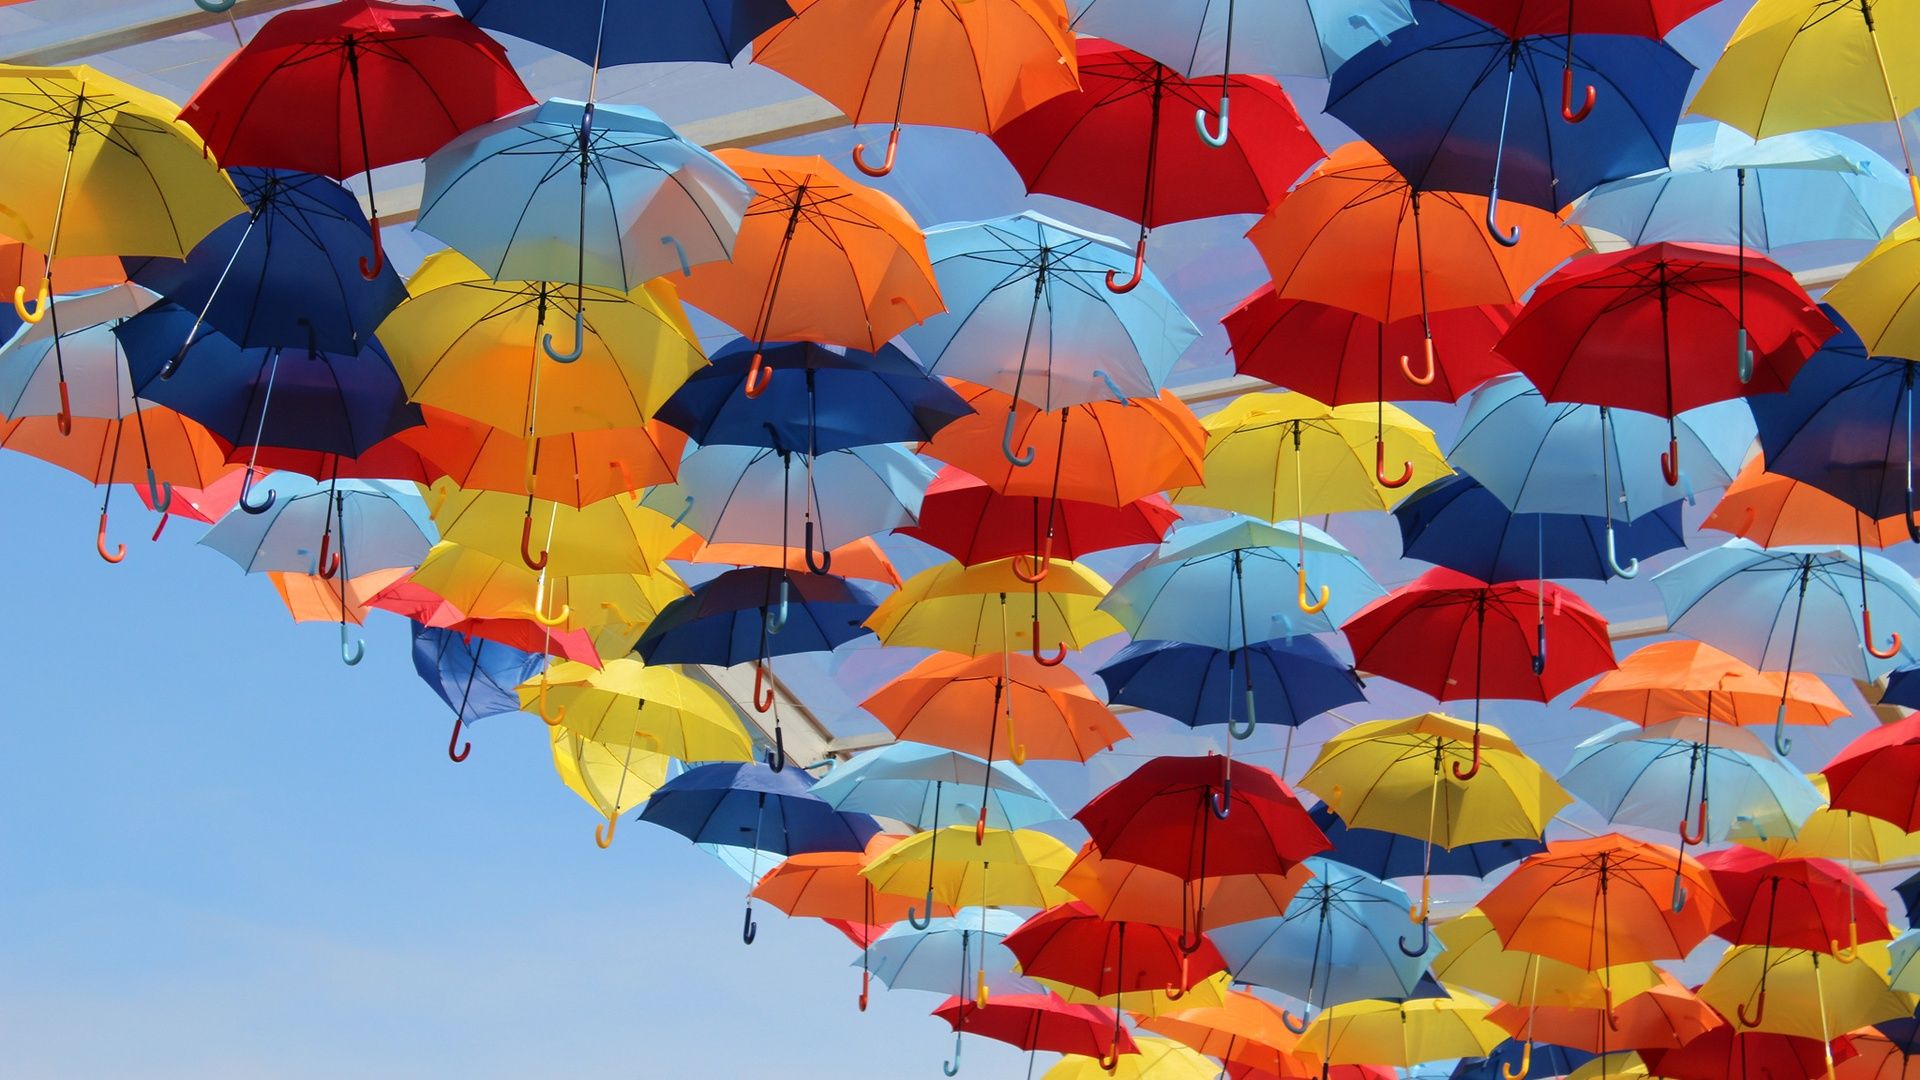 چتر های رنگارنگ به هم پیوسته در آسمان روشن و زیبا